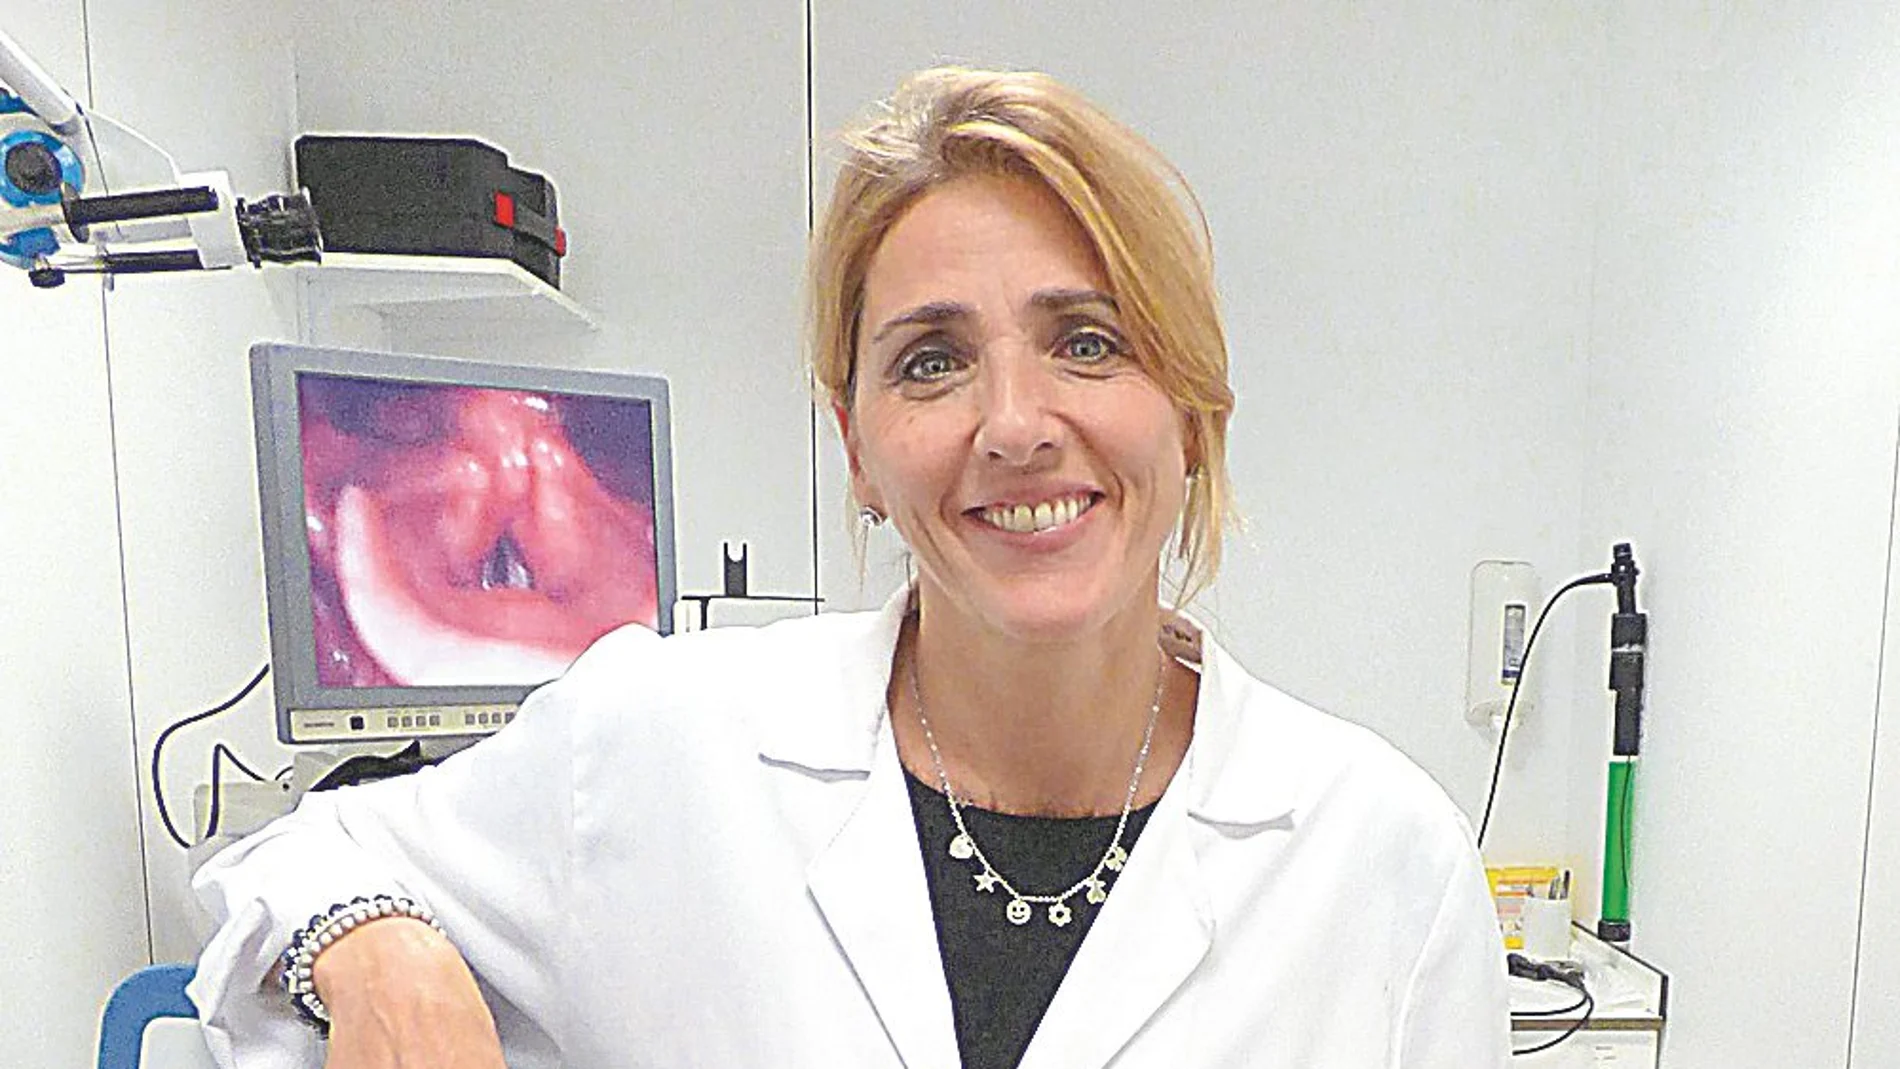 Ana Machado/ Otorrinolaringóloga y especialista en afecciones de la voz del Hospital Universitario Quirónsalud Madrid